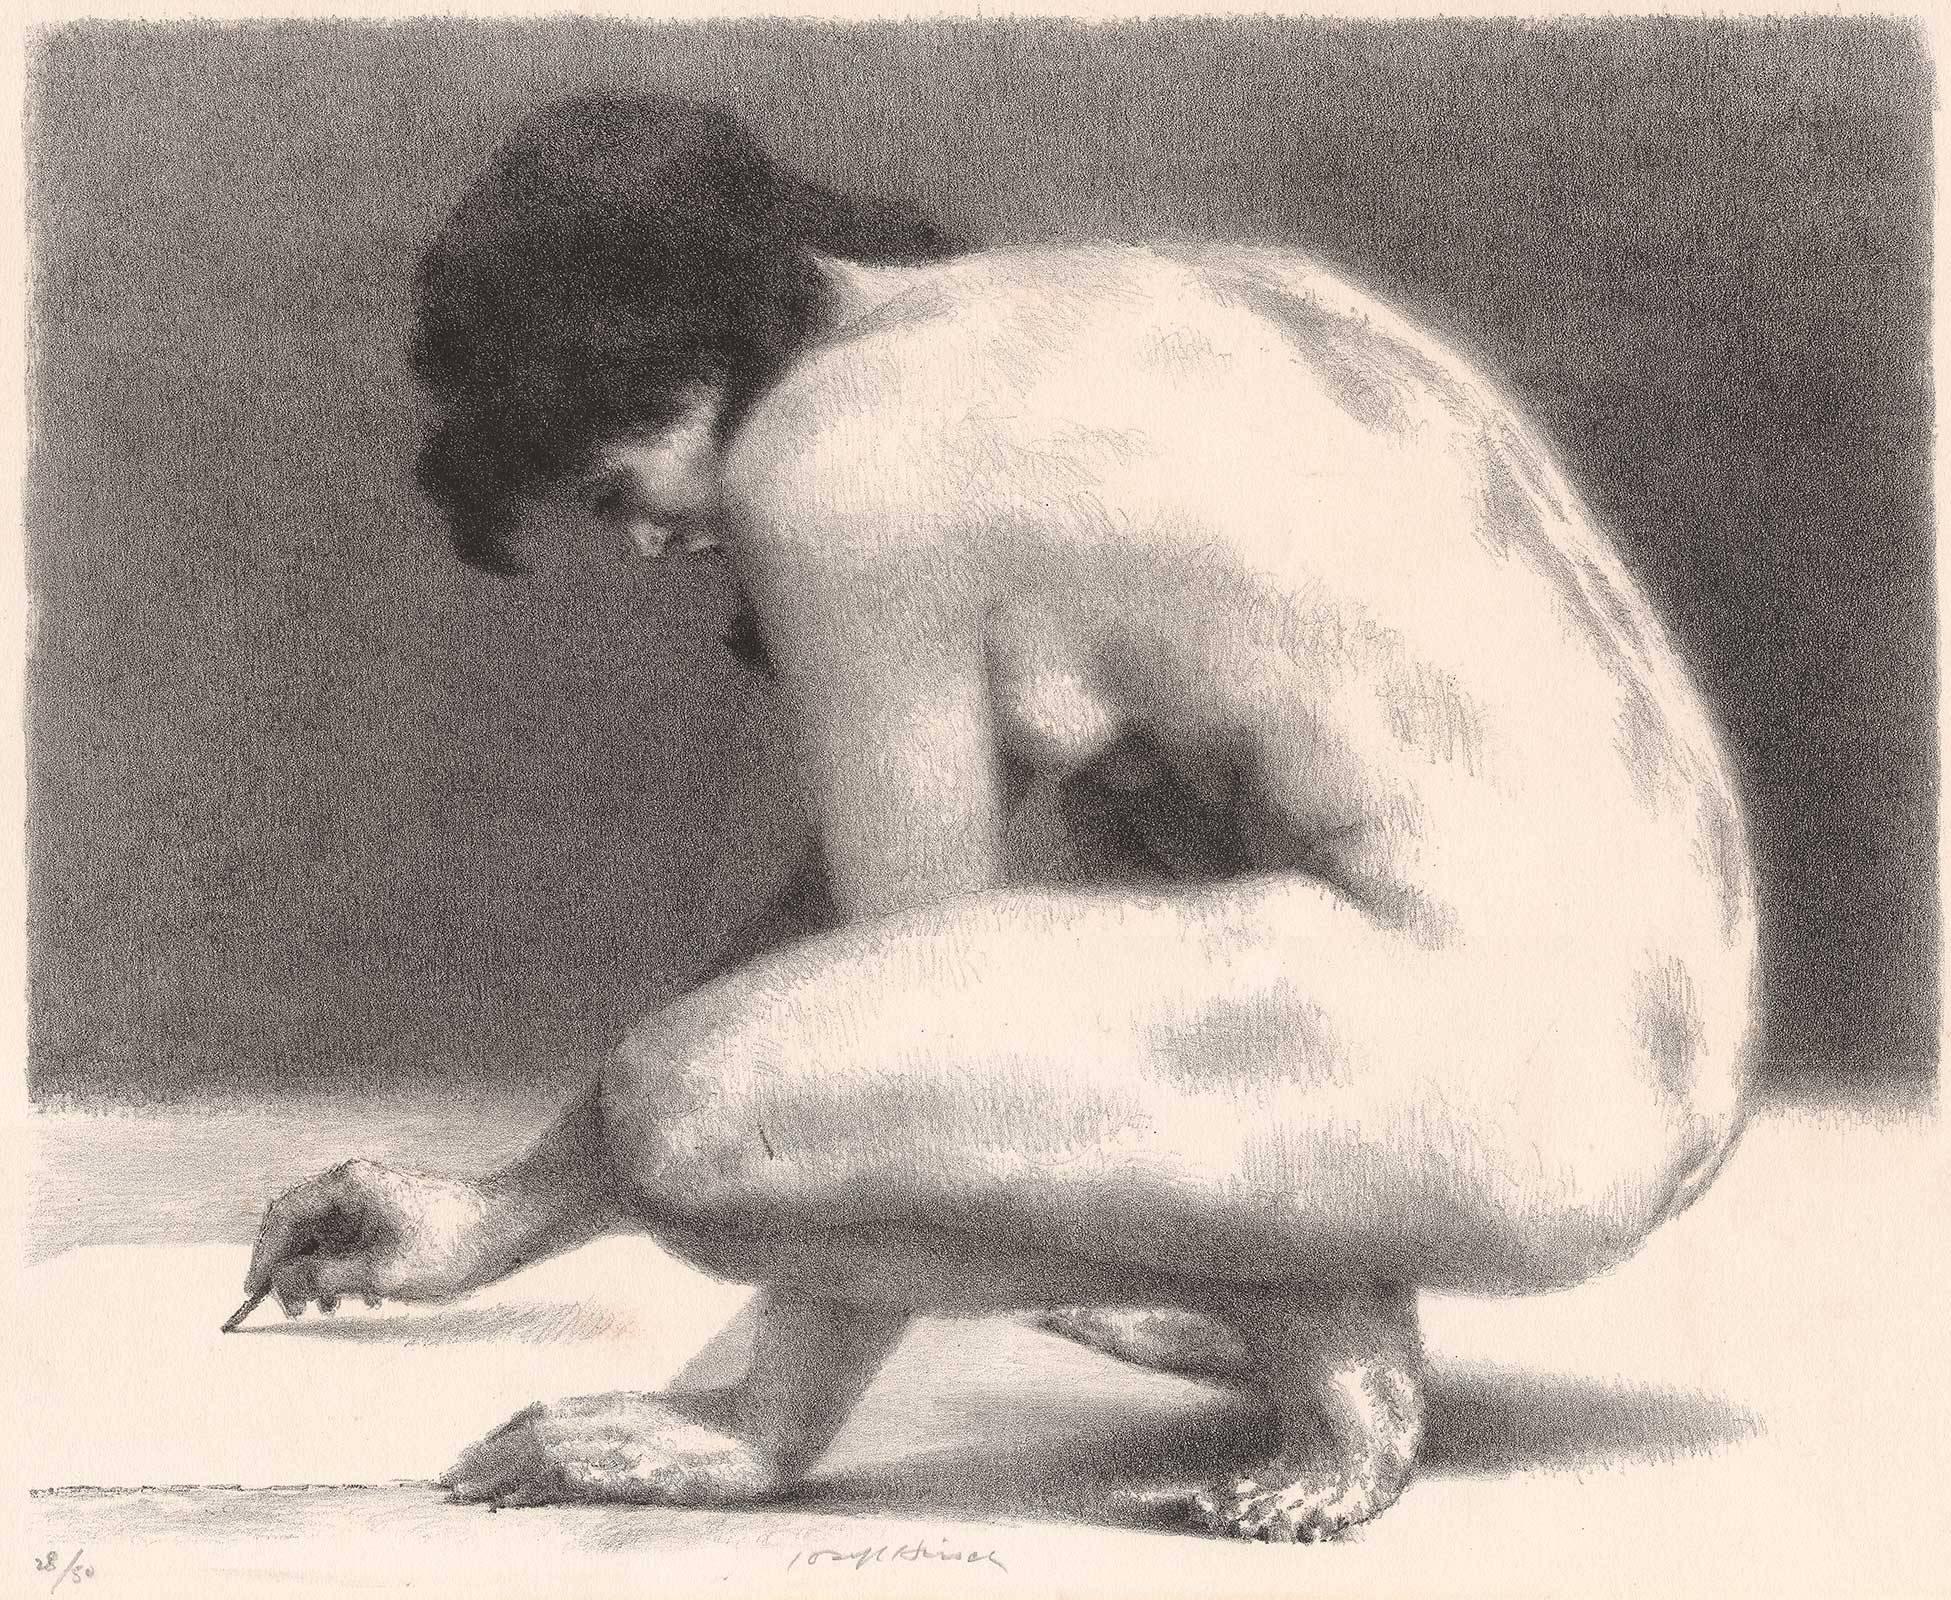 Joseph Hirsch Nude Print – Aktzeichnung (Akt auf den Hüften zeichnet)